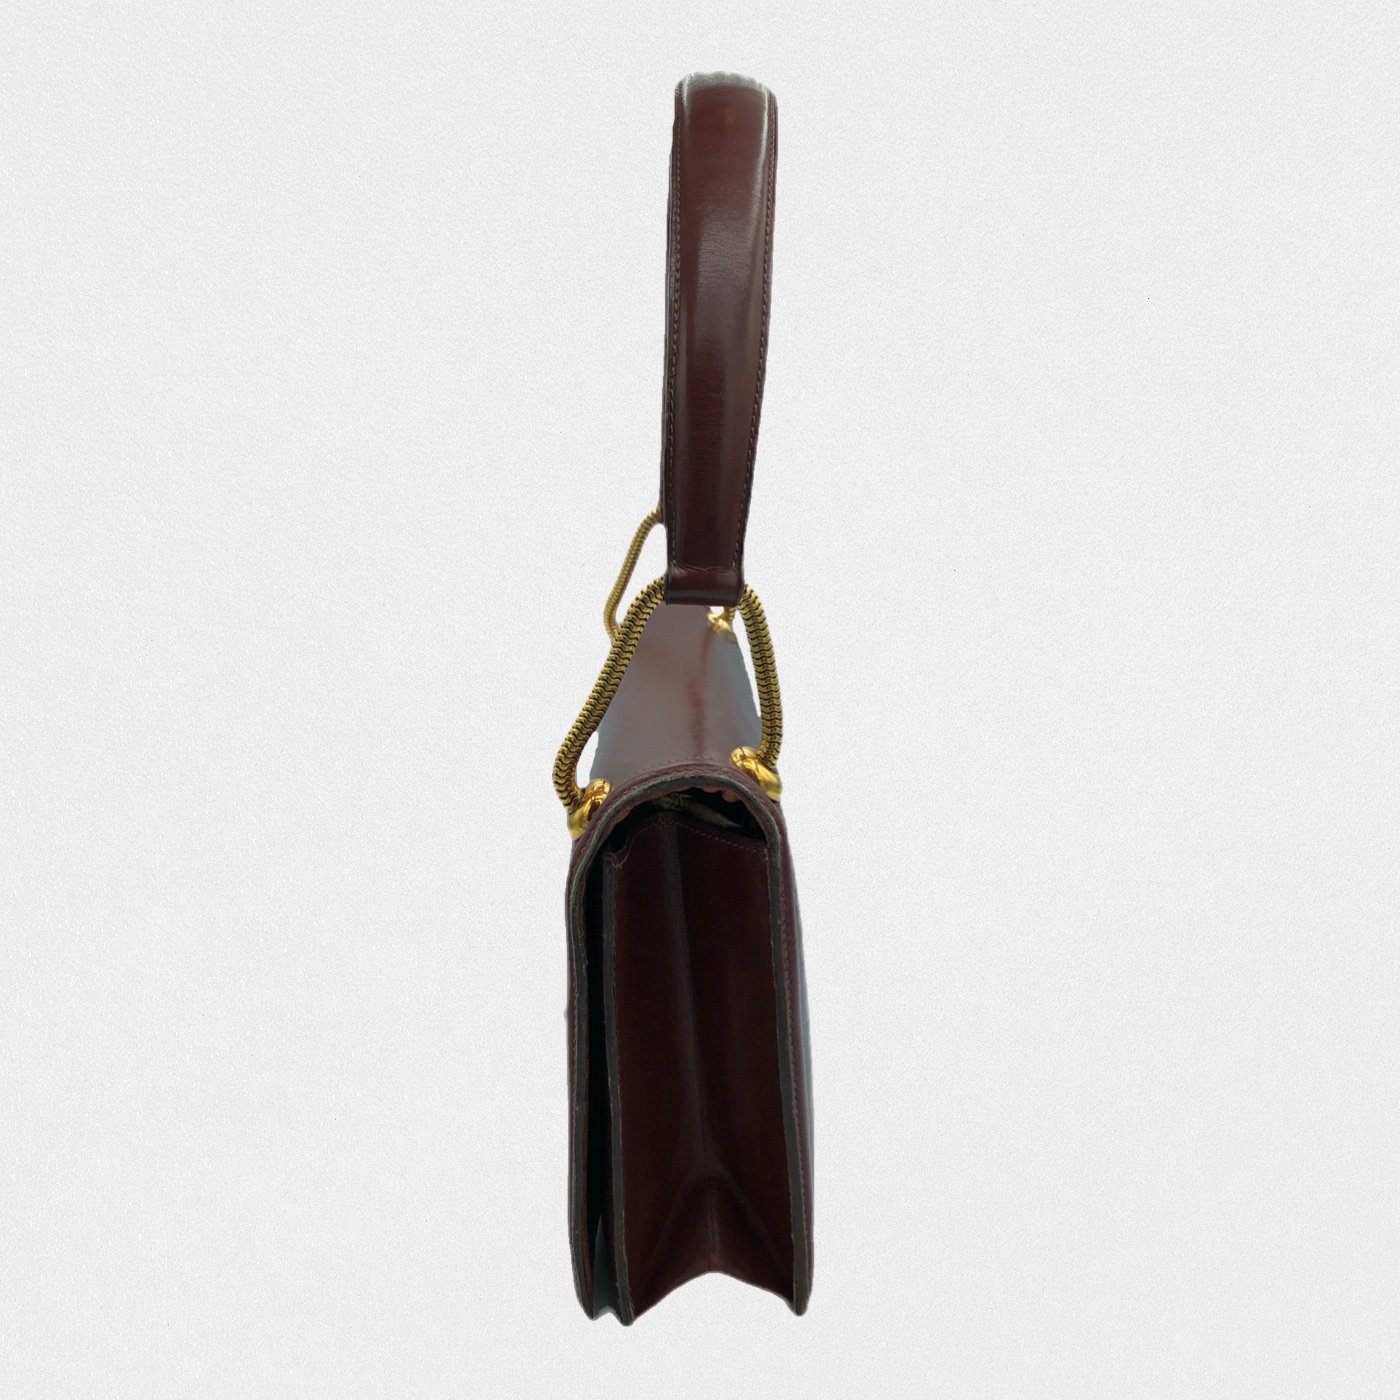 Lysis vintage Hermes bag - 1950s